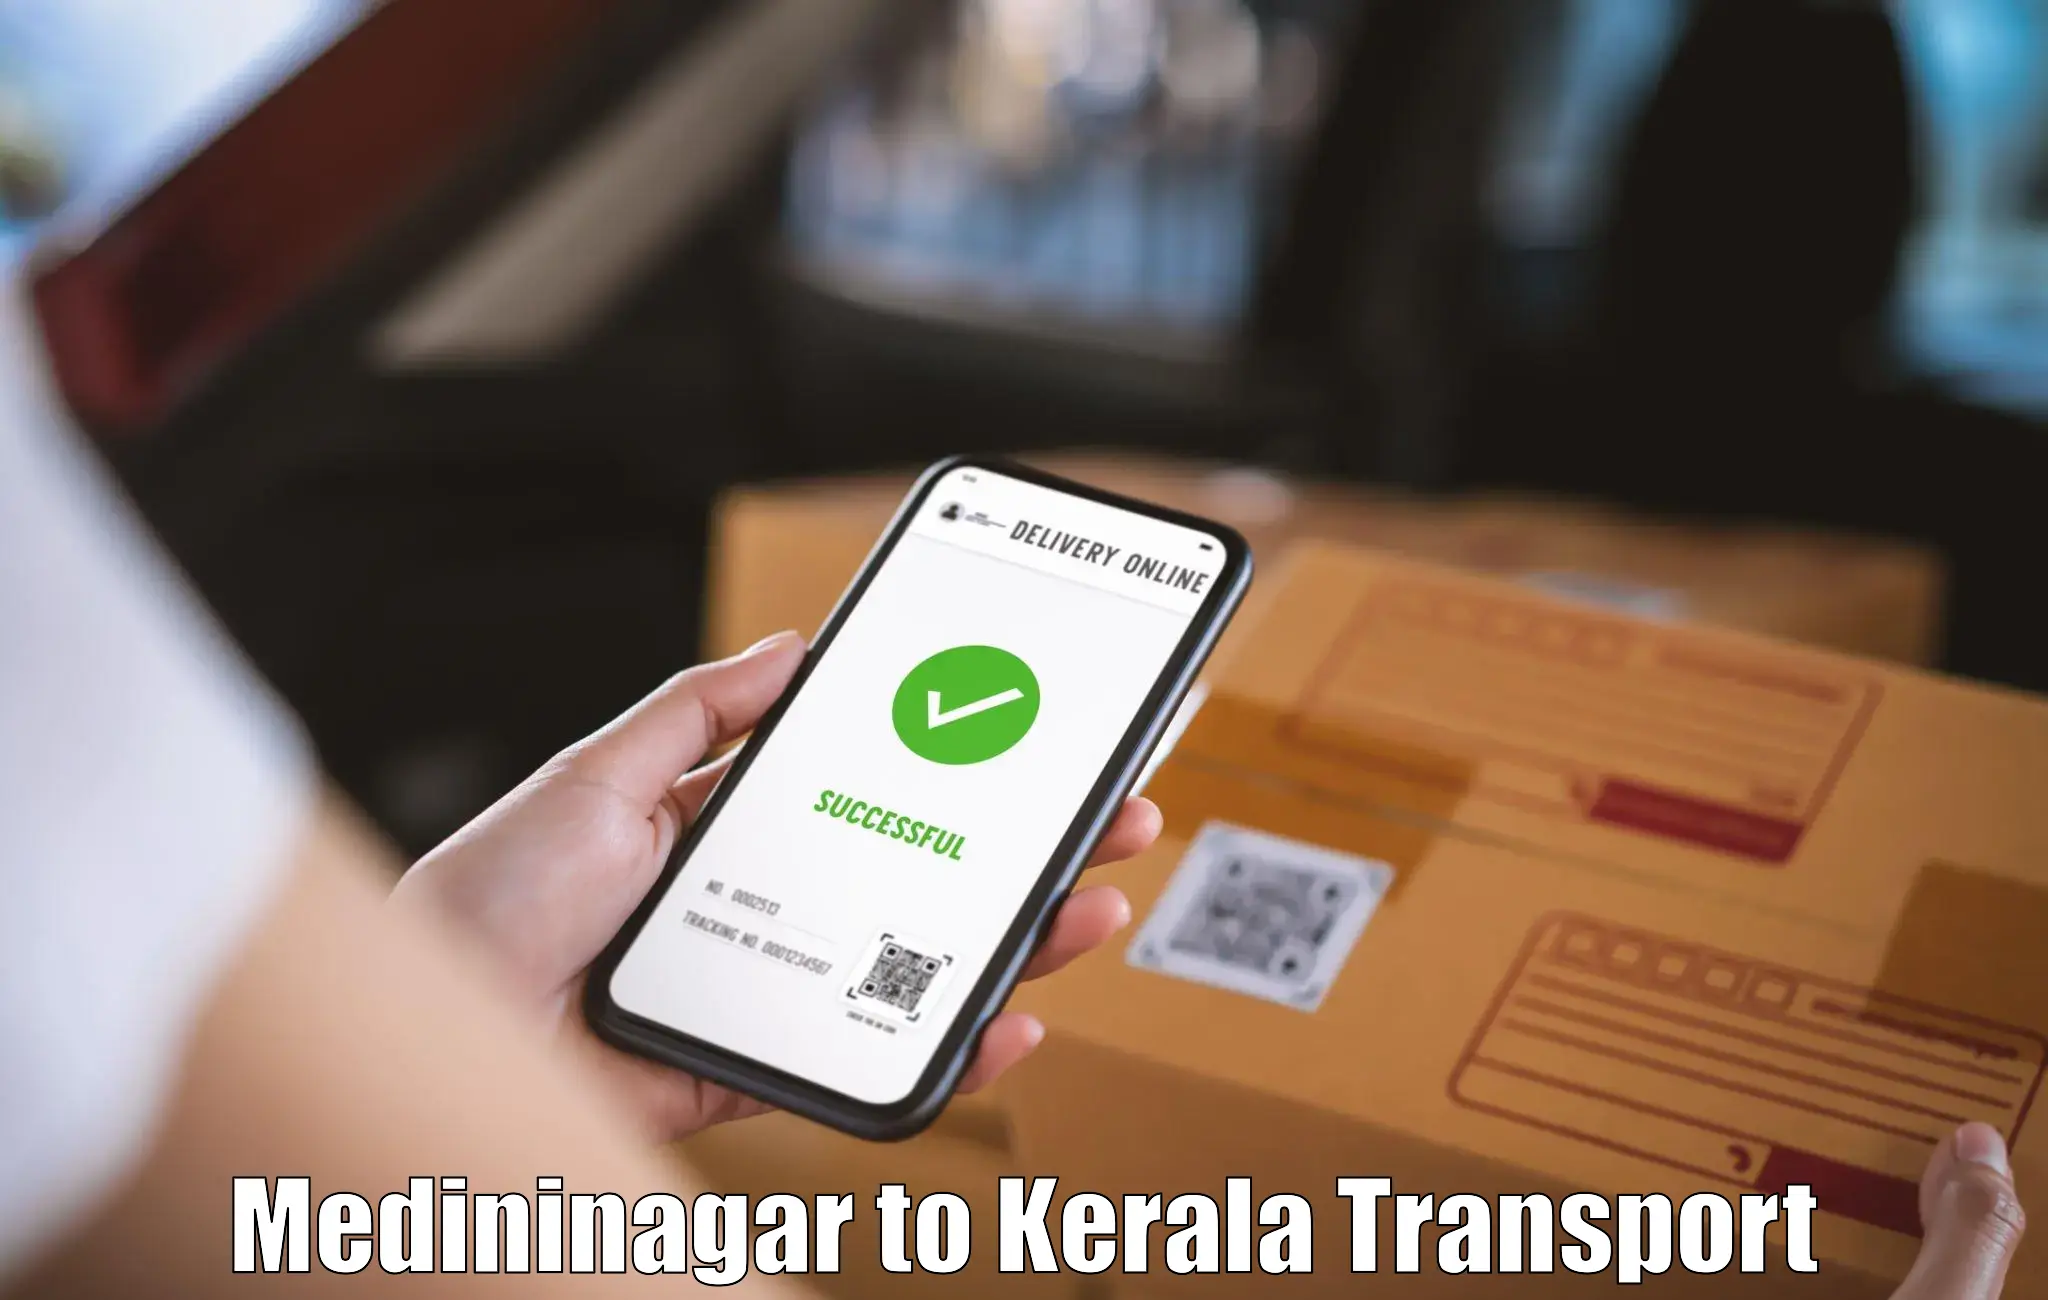 Transport shared services Medininagar to Pandikkad